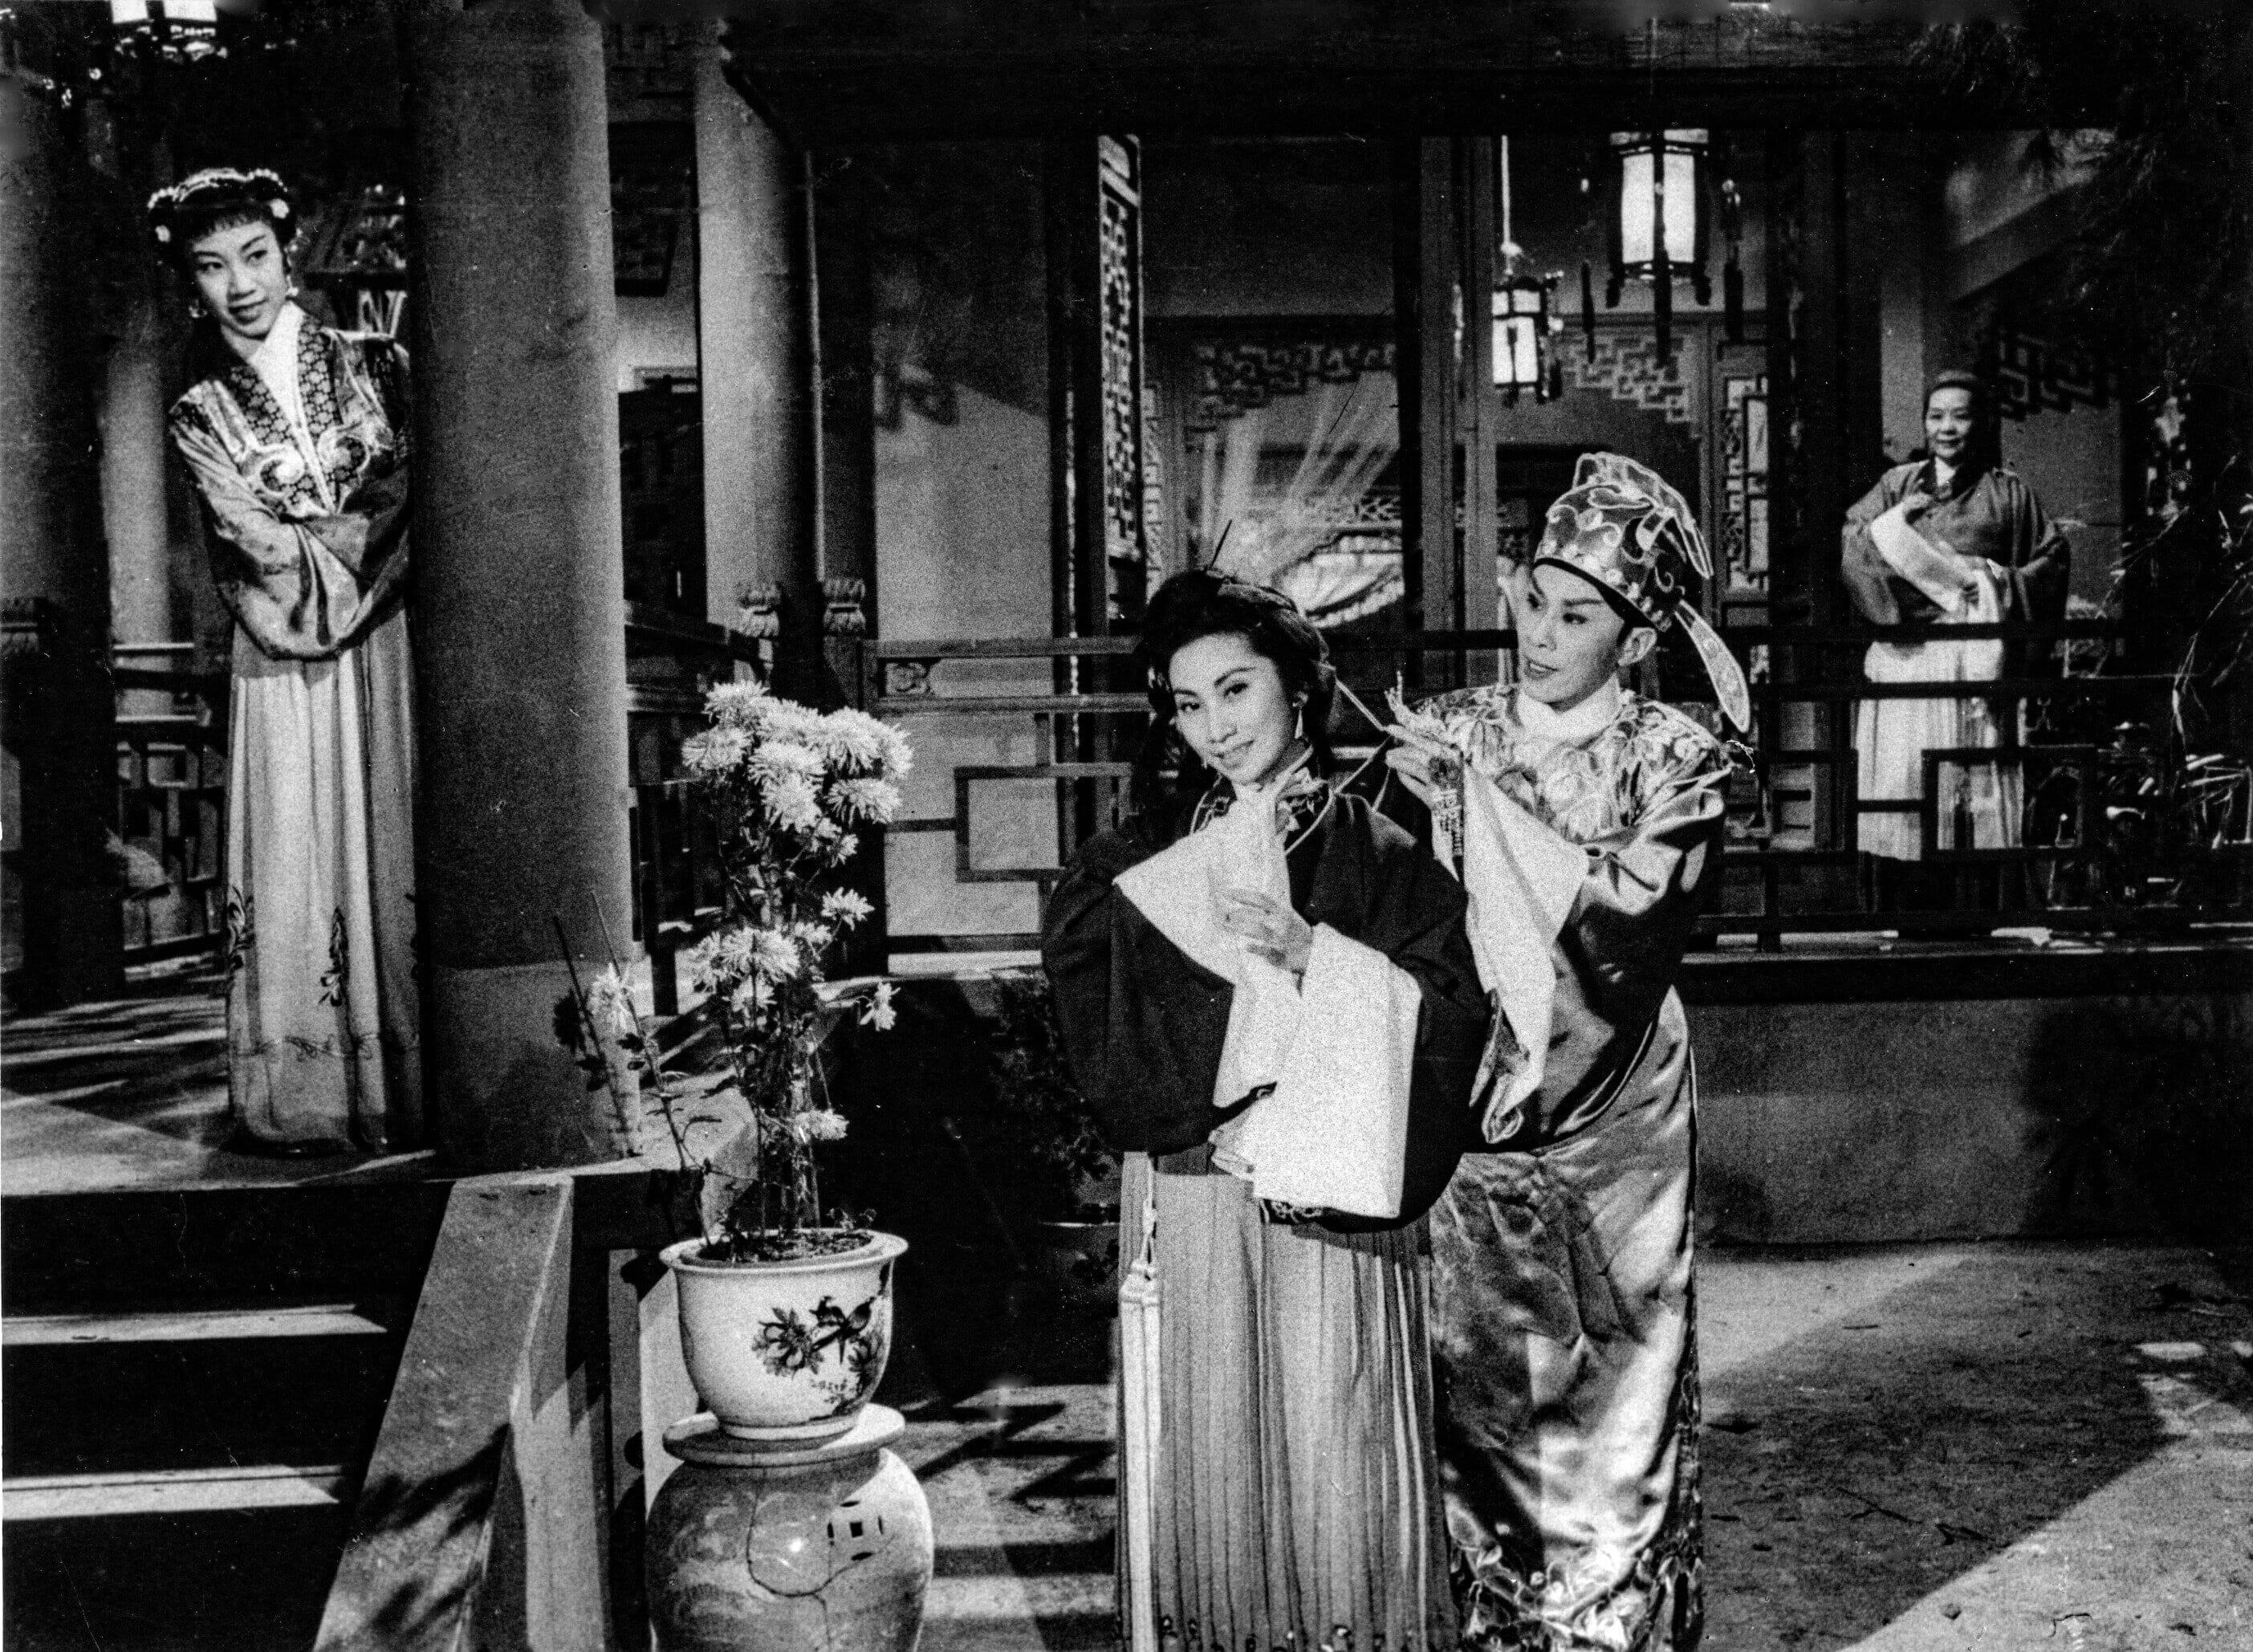 康乐及文化事务署香港电影资料馆（资料馆）七月举办「再看《紫钗》、《蝶影》、唐涤生」放映节目，放映粤剧大师唐涤生编剧的《紫钗记》（1959）和《蝶影红梨记》（1959）（修复版）。资料馆电影院将于七月一日（星期一）和七日（星期日）加场放映两部作品，让唐涤生笔下的中华文化瑰宝呈现于更多戏迷眼前。此放映节目为「中华文化节」节目之一。图示《紫钗记》剧照。